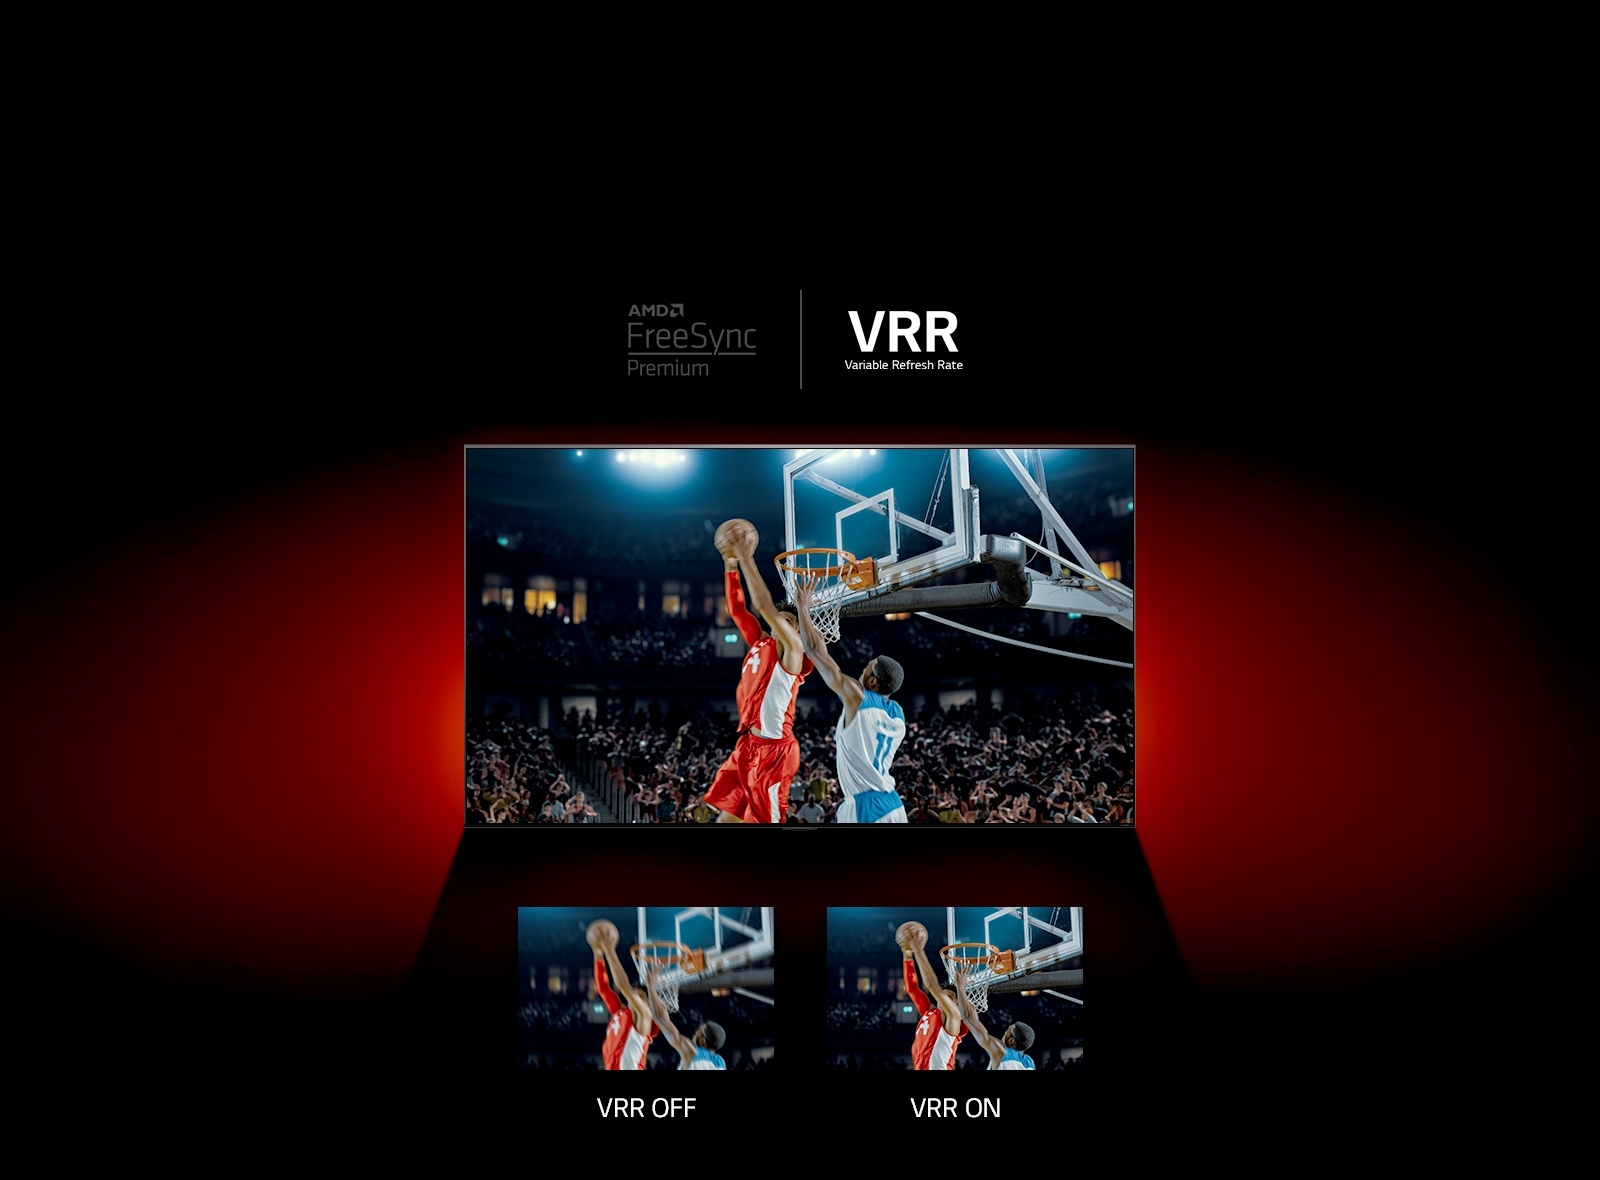 Có TV QNED đứng trước bức tường màu đỏ - hình ảnh trong màn hình cho thấy một trận bóng rổ với hai người chơi trò chơi. Ngay bên dưới, có hai hộp hình ảnh. Ở bên trái cho biết VRR OFF và hiển thị hình ảnh mờ của cùng một hình ảnh và bên phải cho biết VRR ON và hiển thị cùng một hình ảnh.